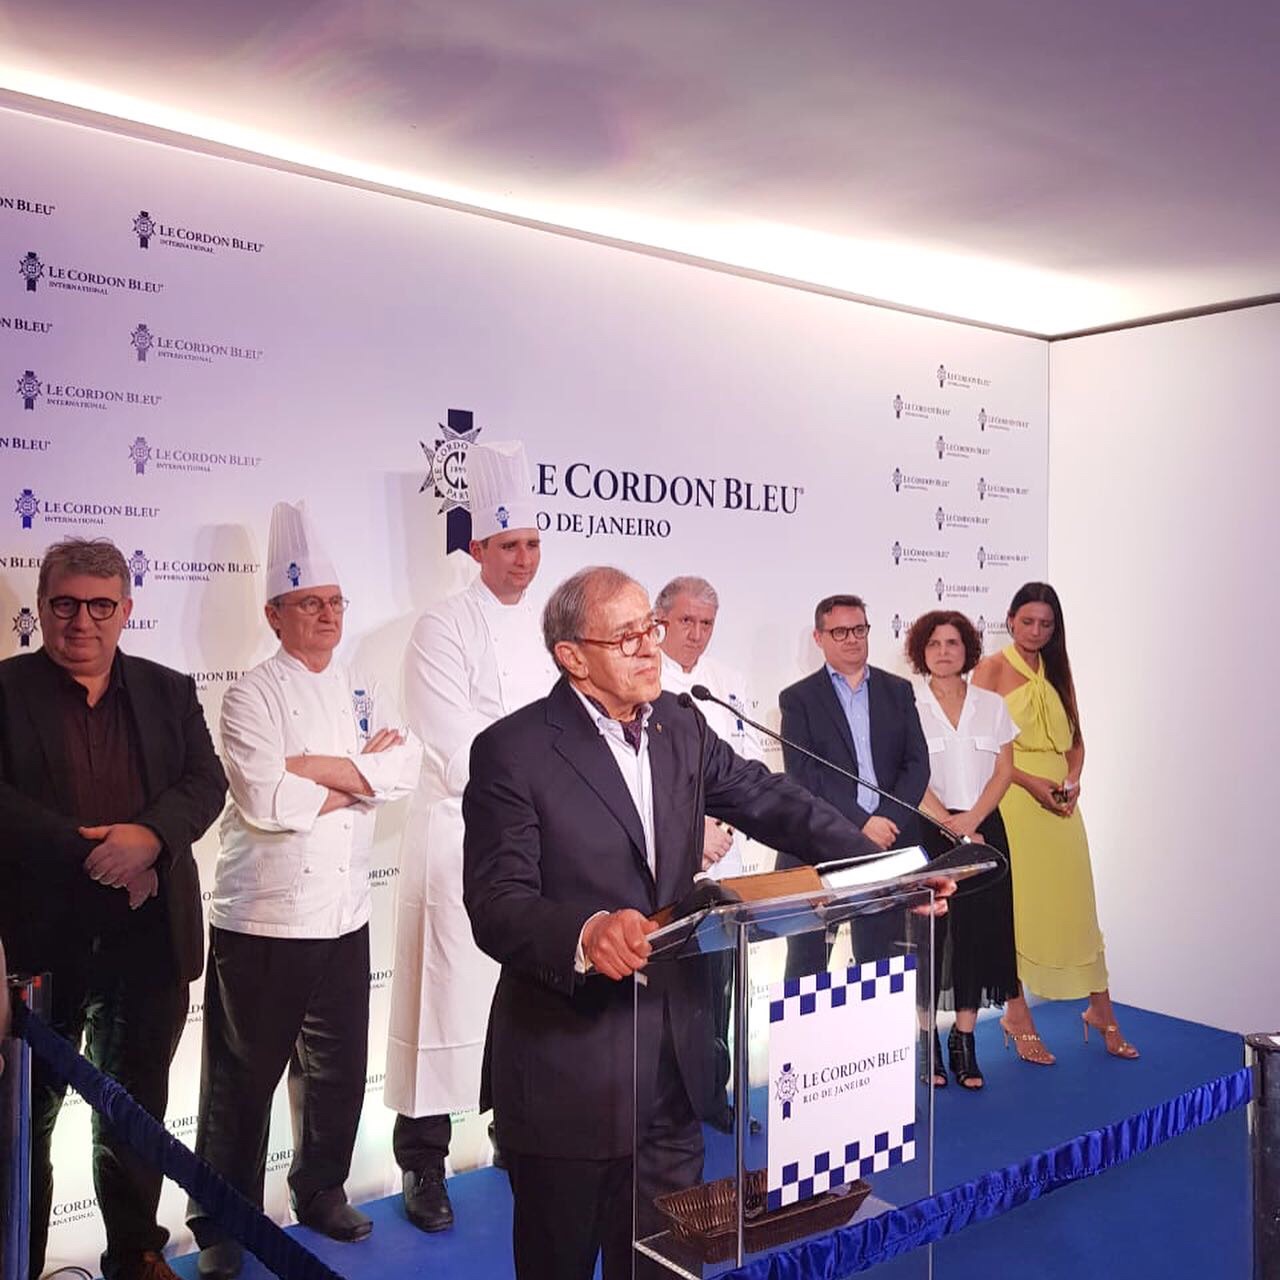  Official Launch Party of Le Cordon Bleu Rio de Janeiro